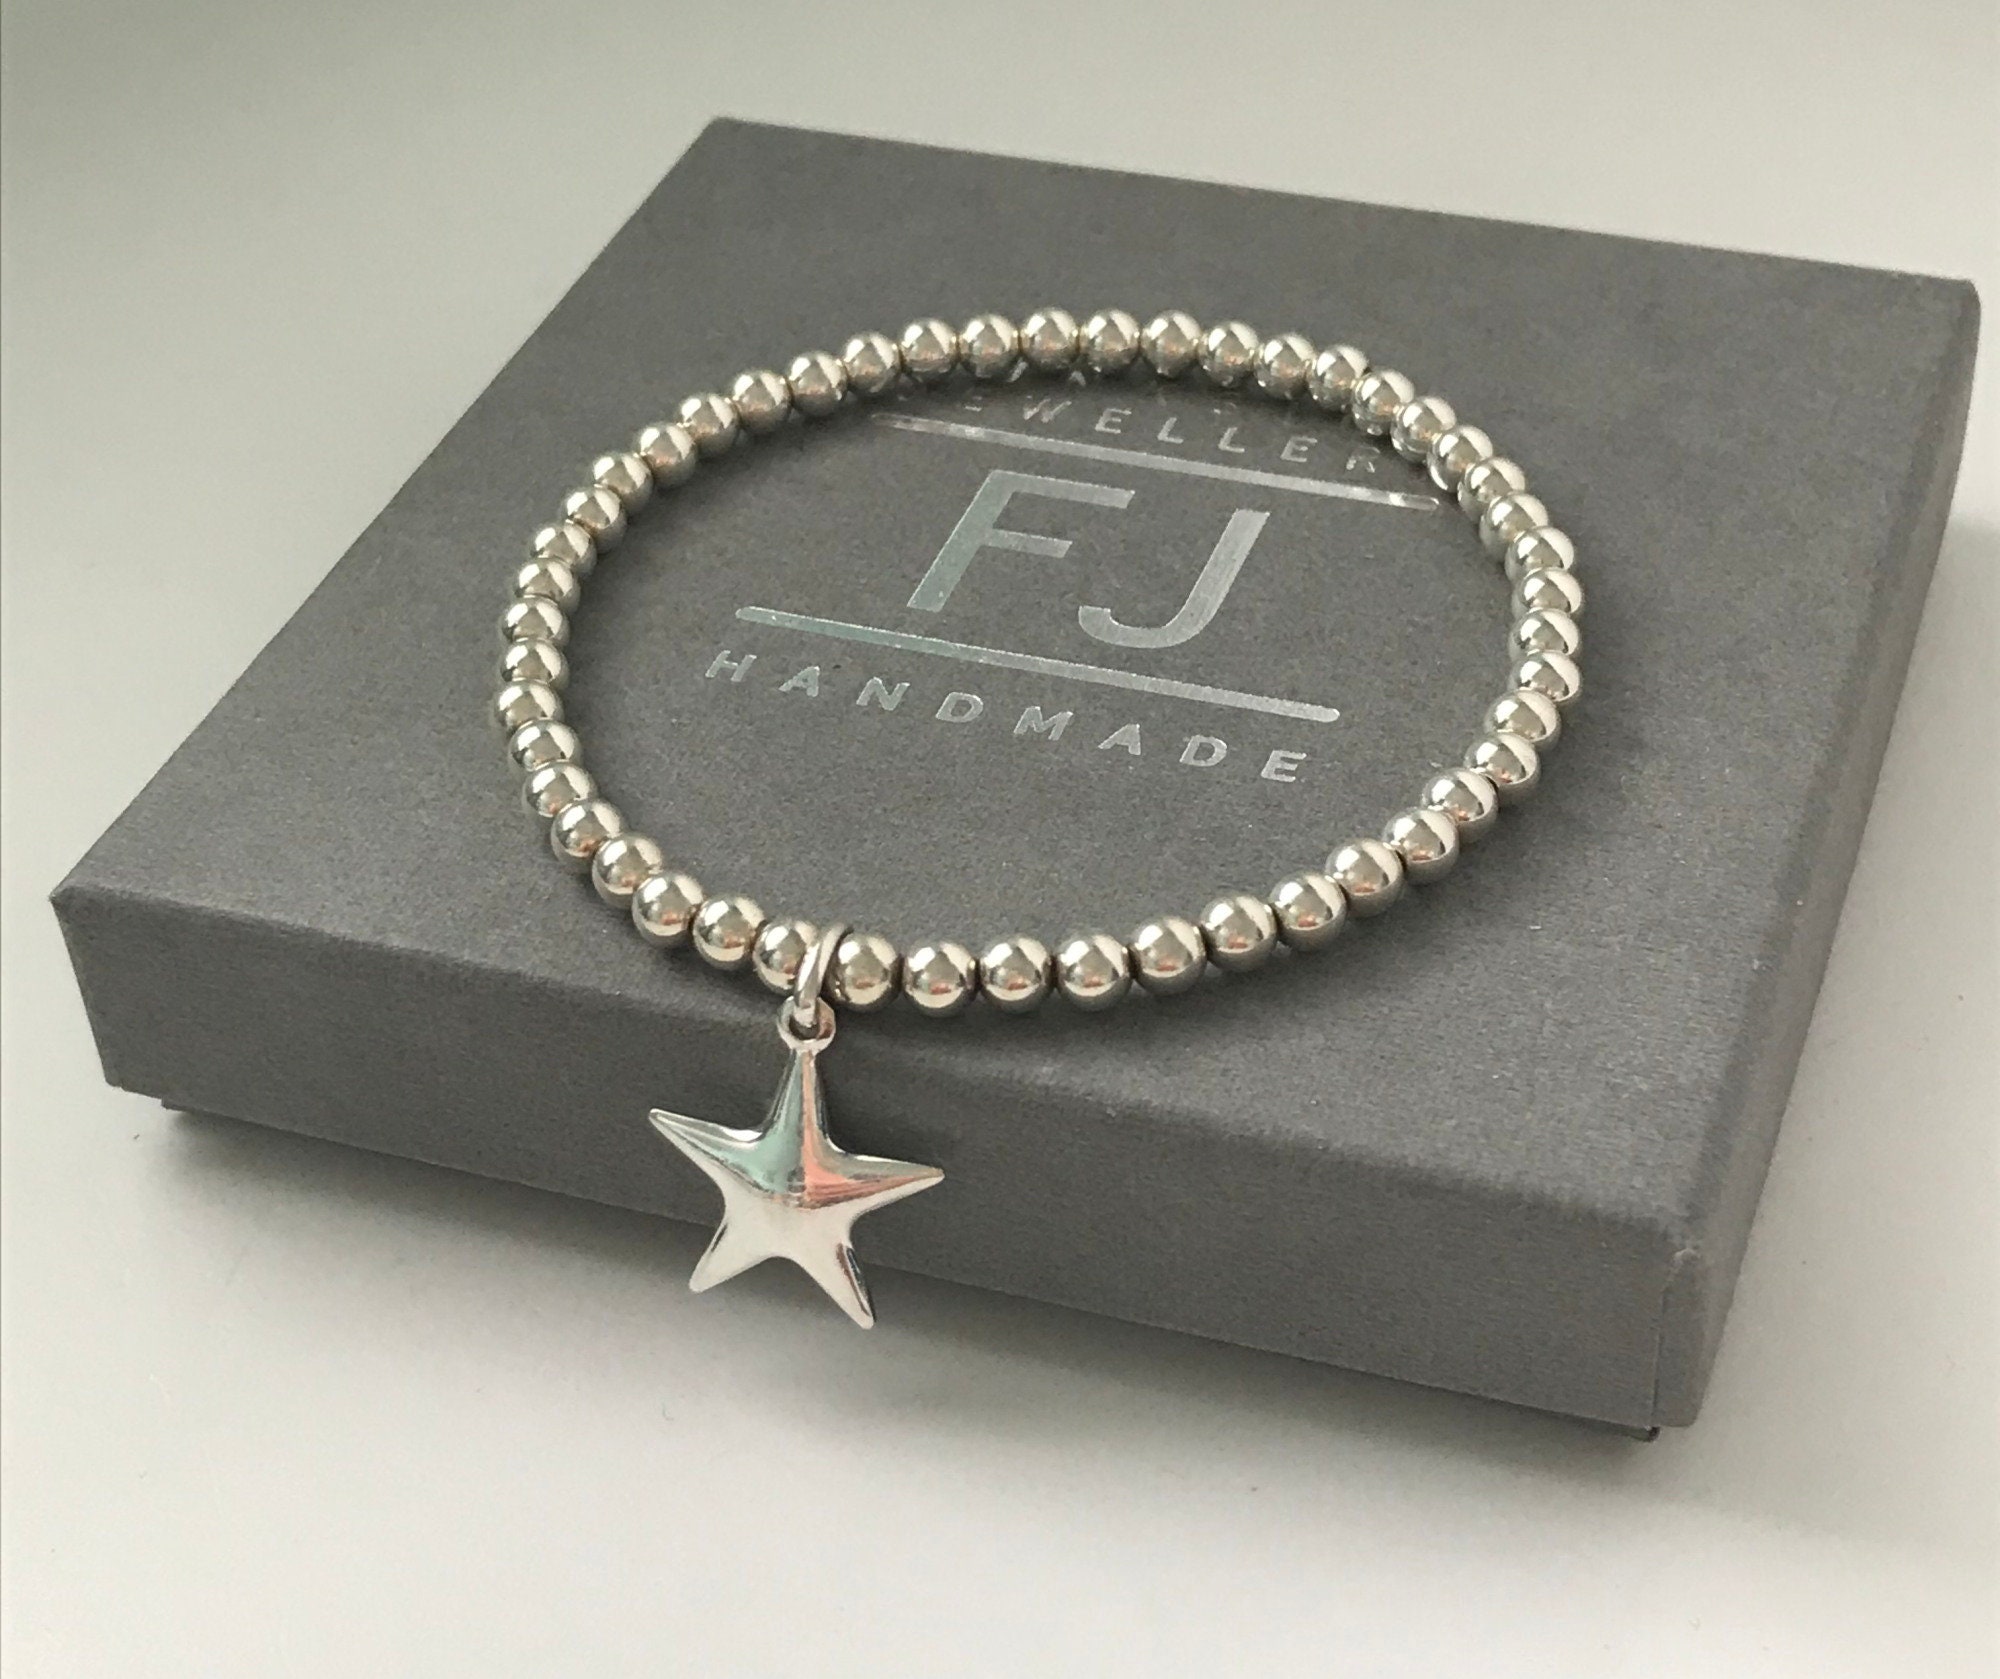 Sterling Silver Star Charm Bracelet Beaded Wish Bracelet Uk Handmade